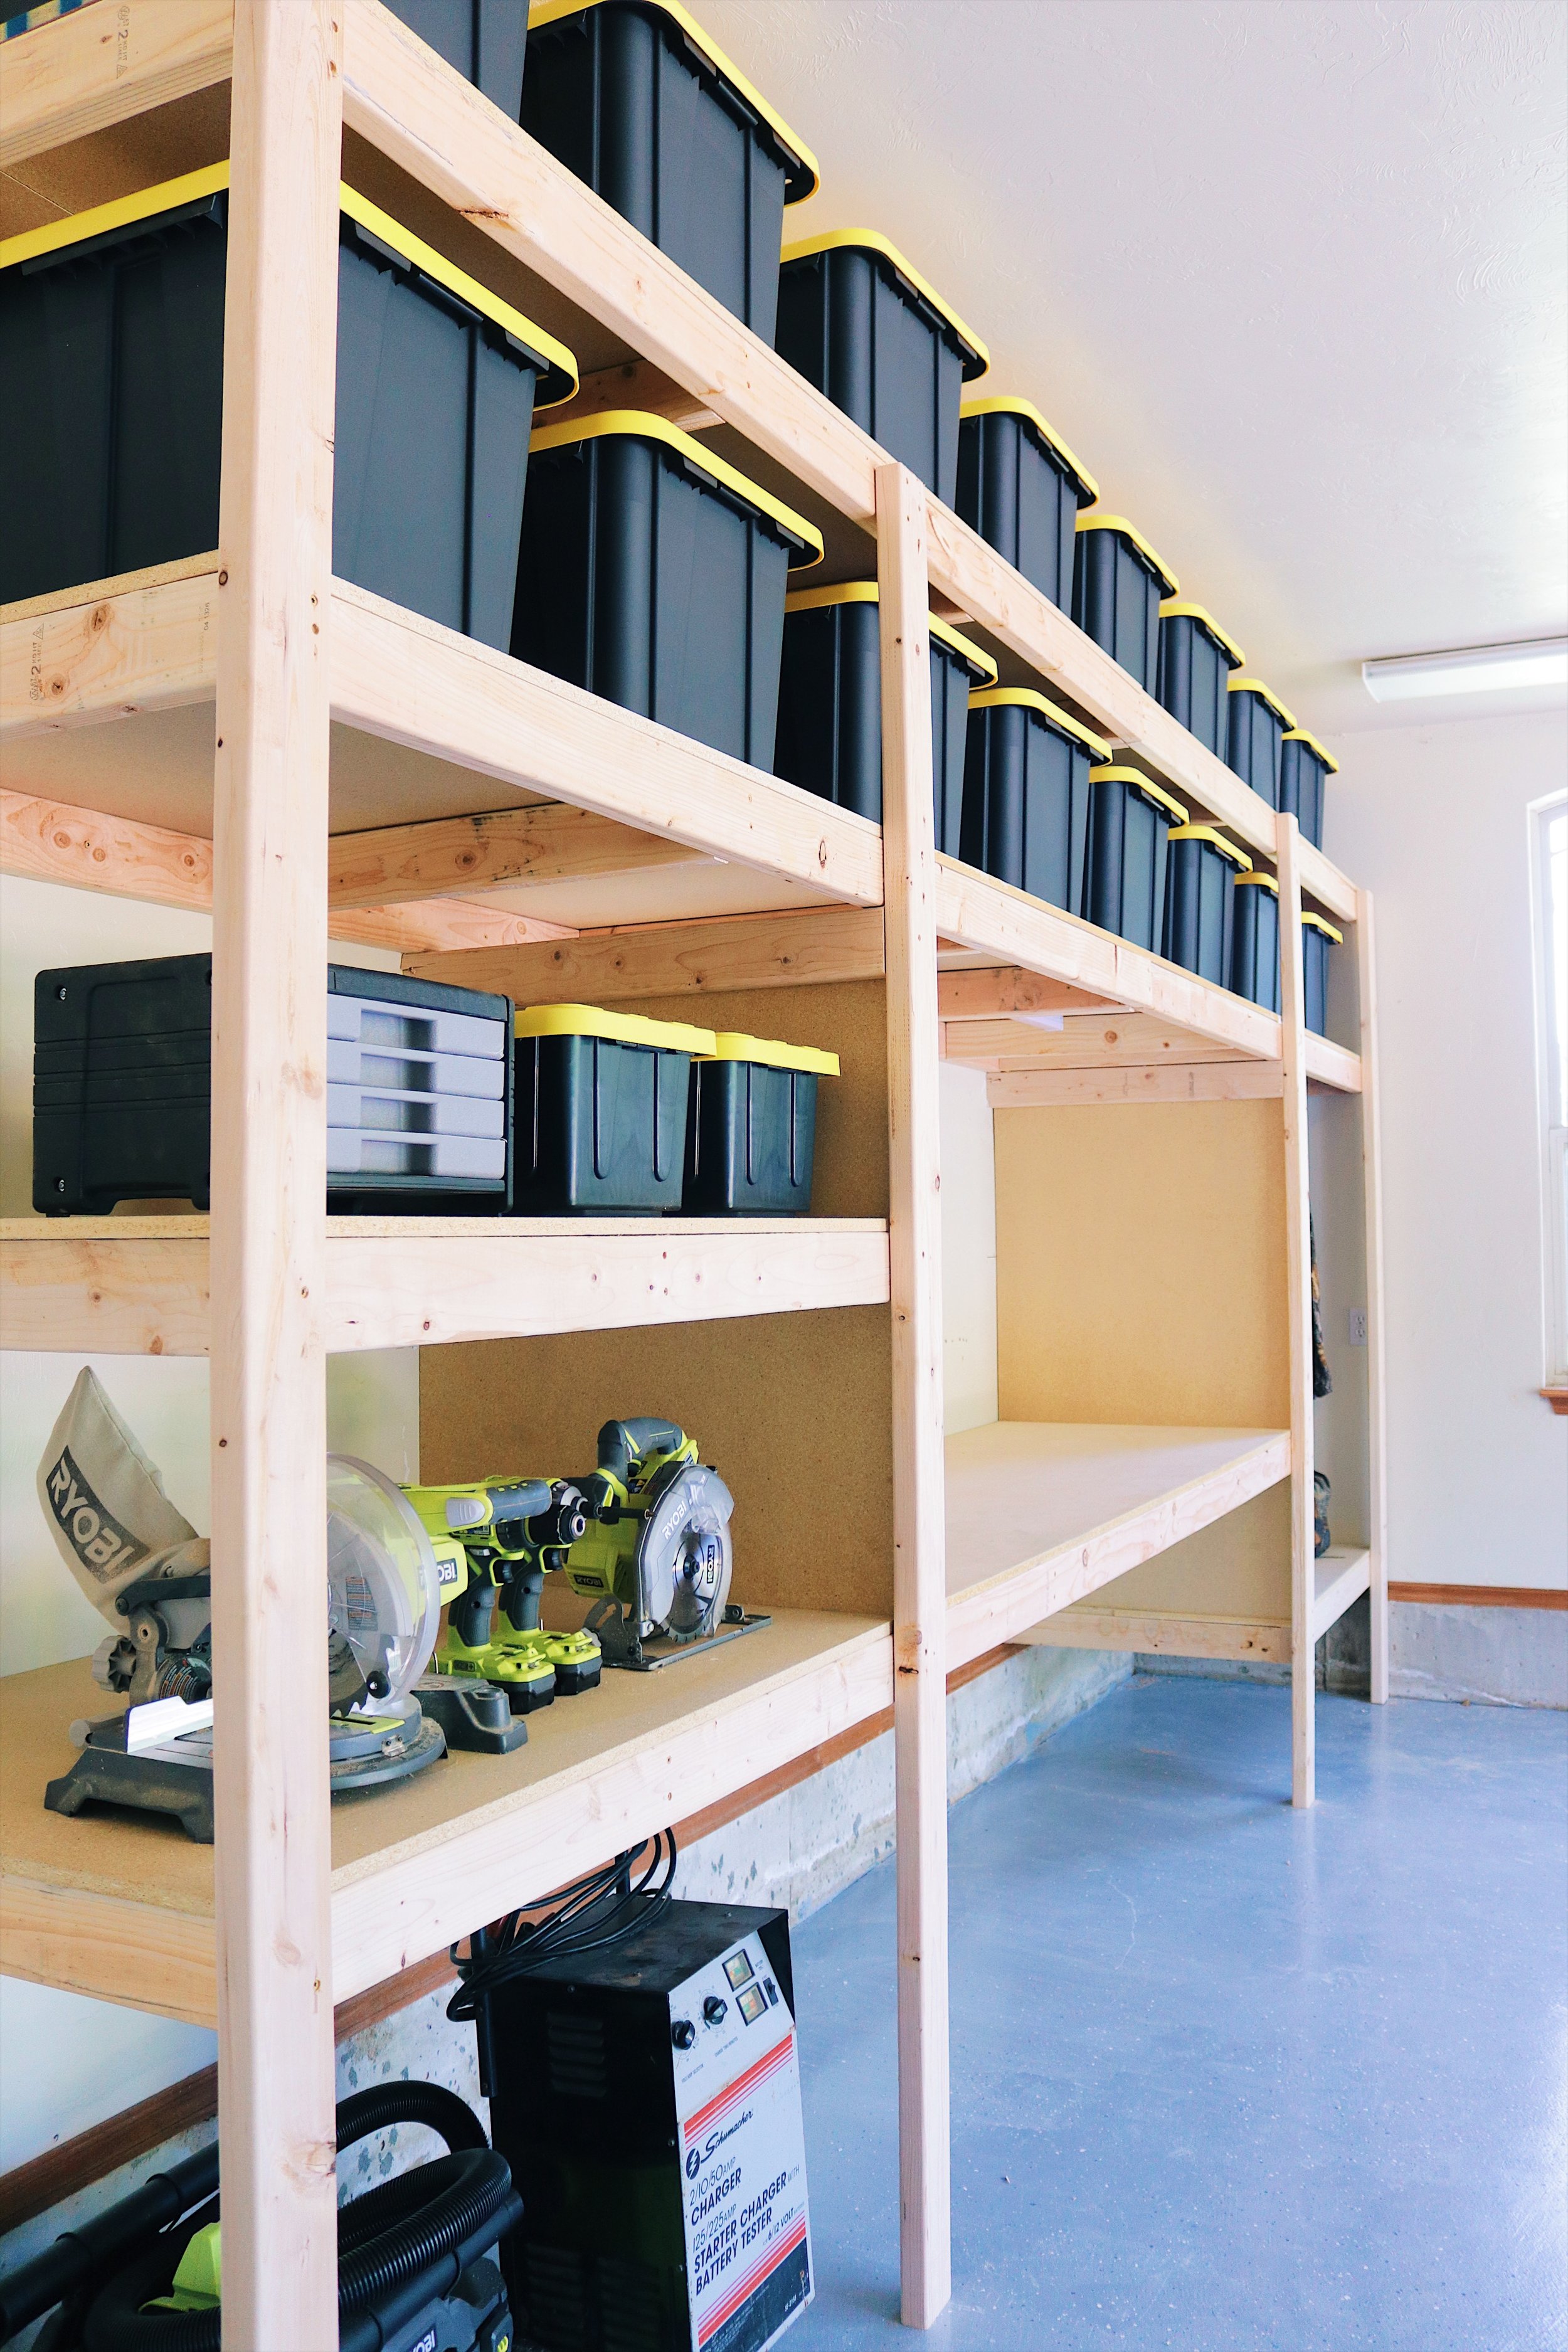 Diy Garage Shelves Modern Builds, Build Your Own Garage Shelves